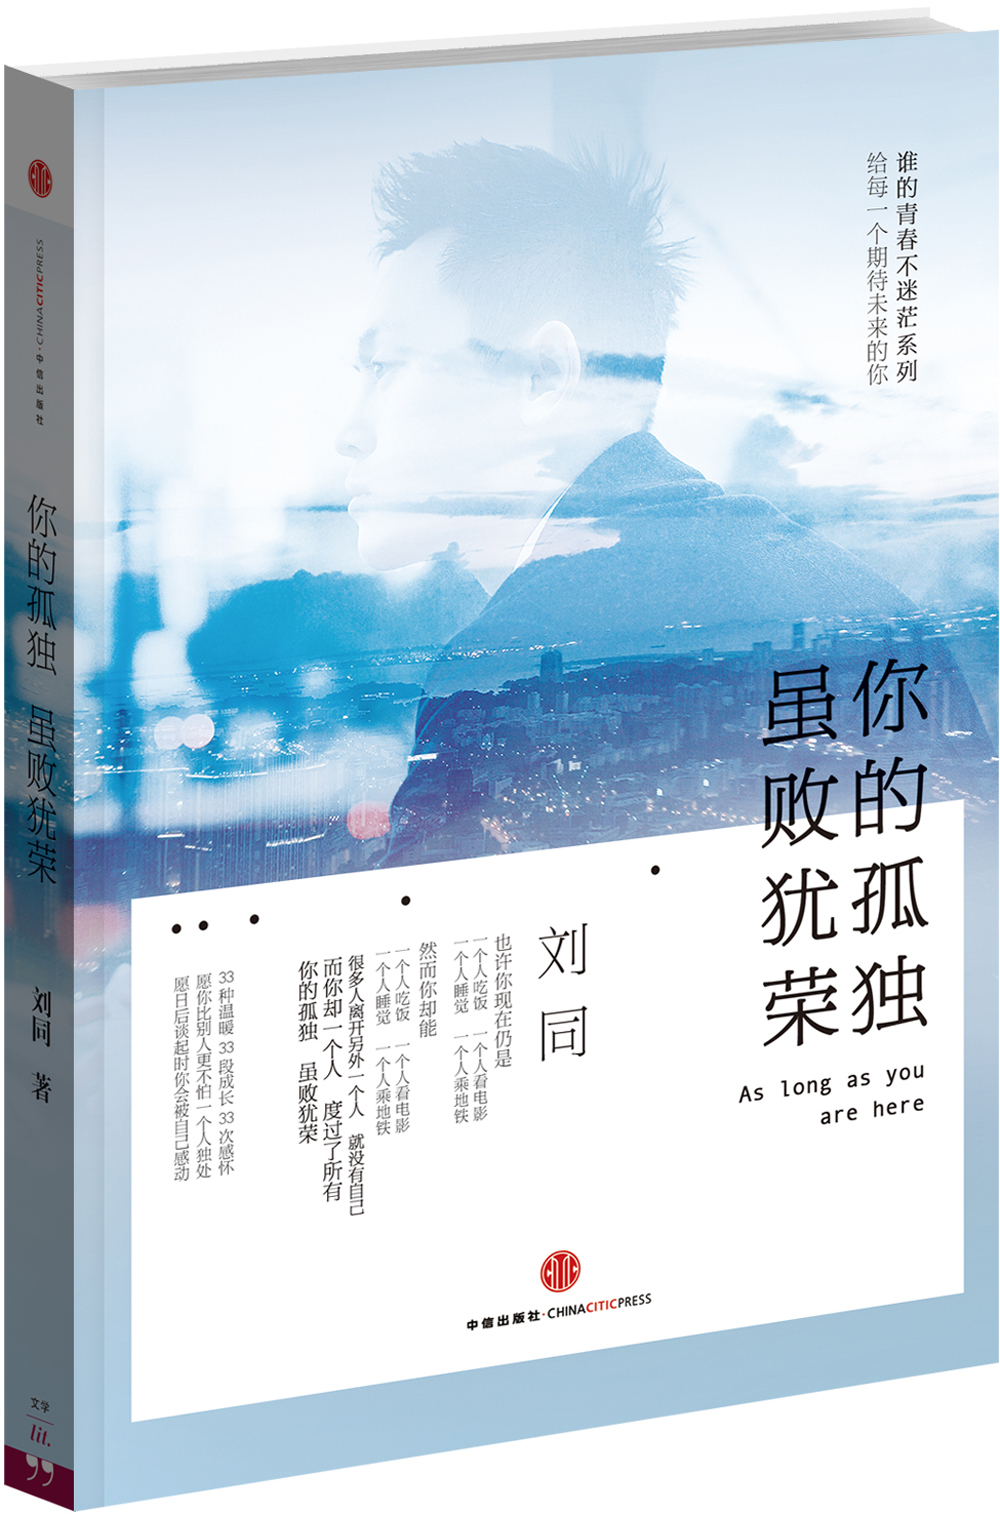 刘同2014新书《你的孤独,虽败犹荣》三月突破